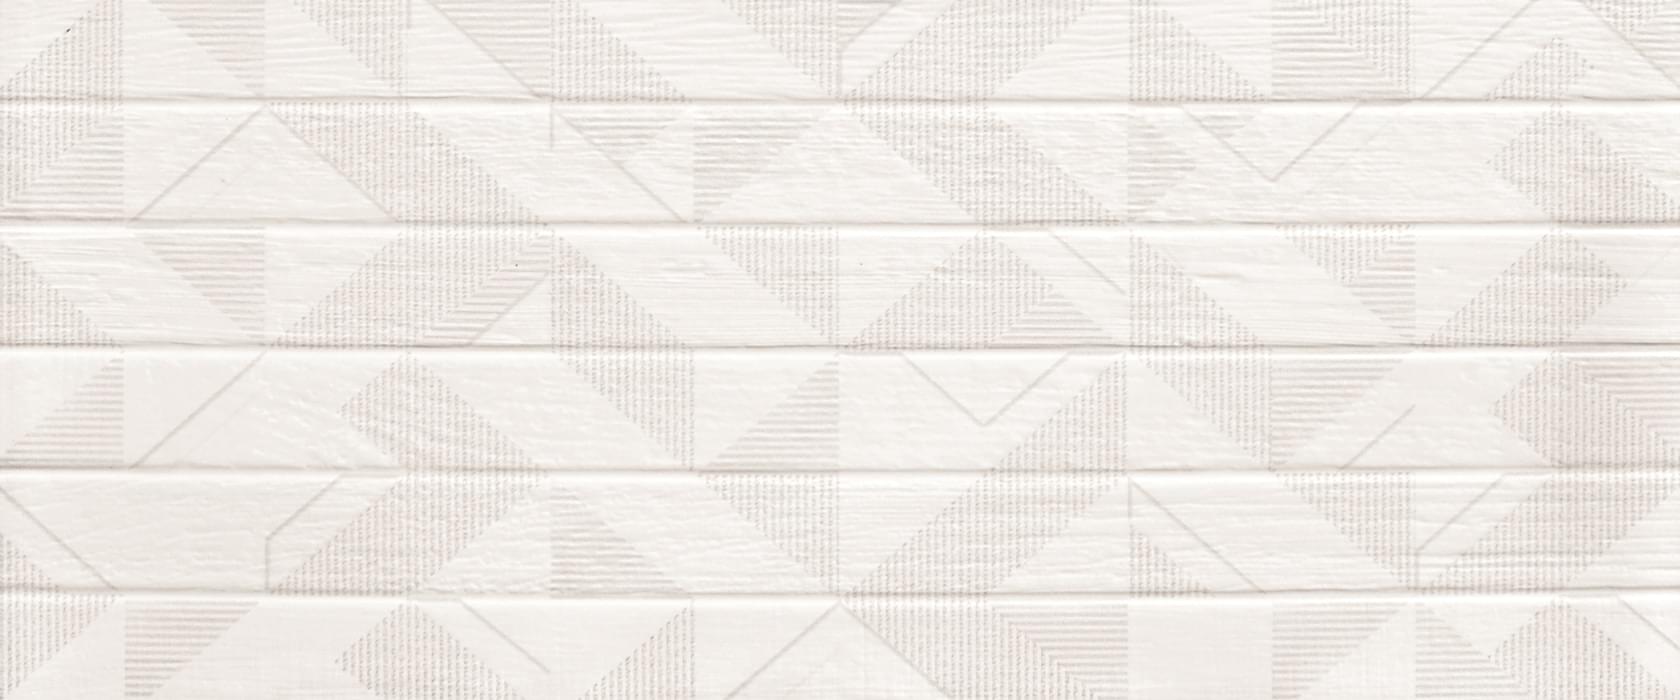 Плитка настенная Gracia Ceramica Bianca White Wall 02 60x25 см